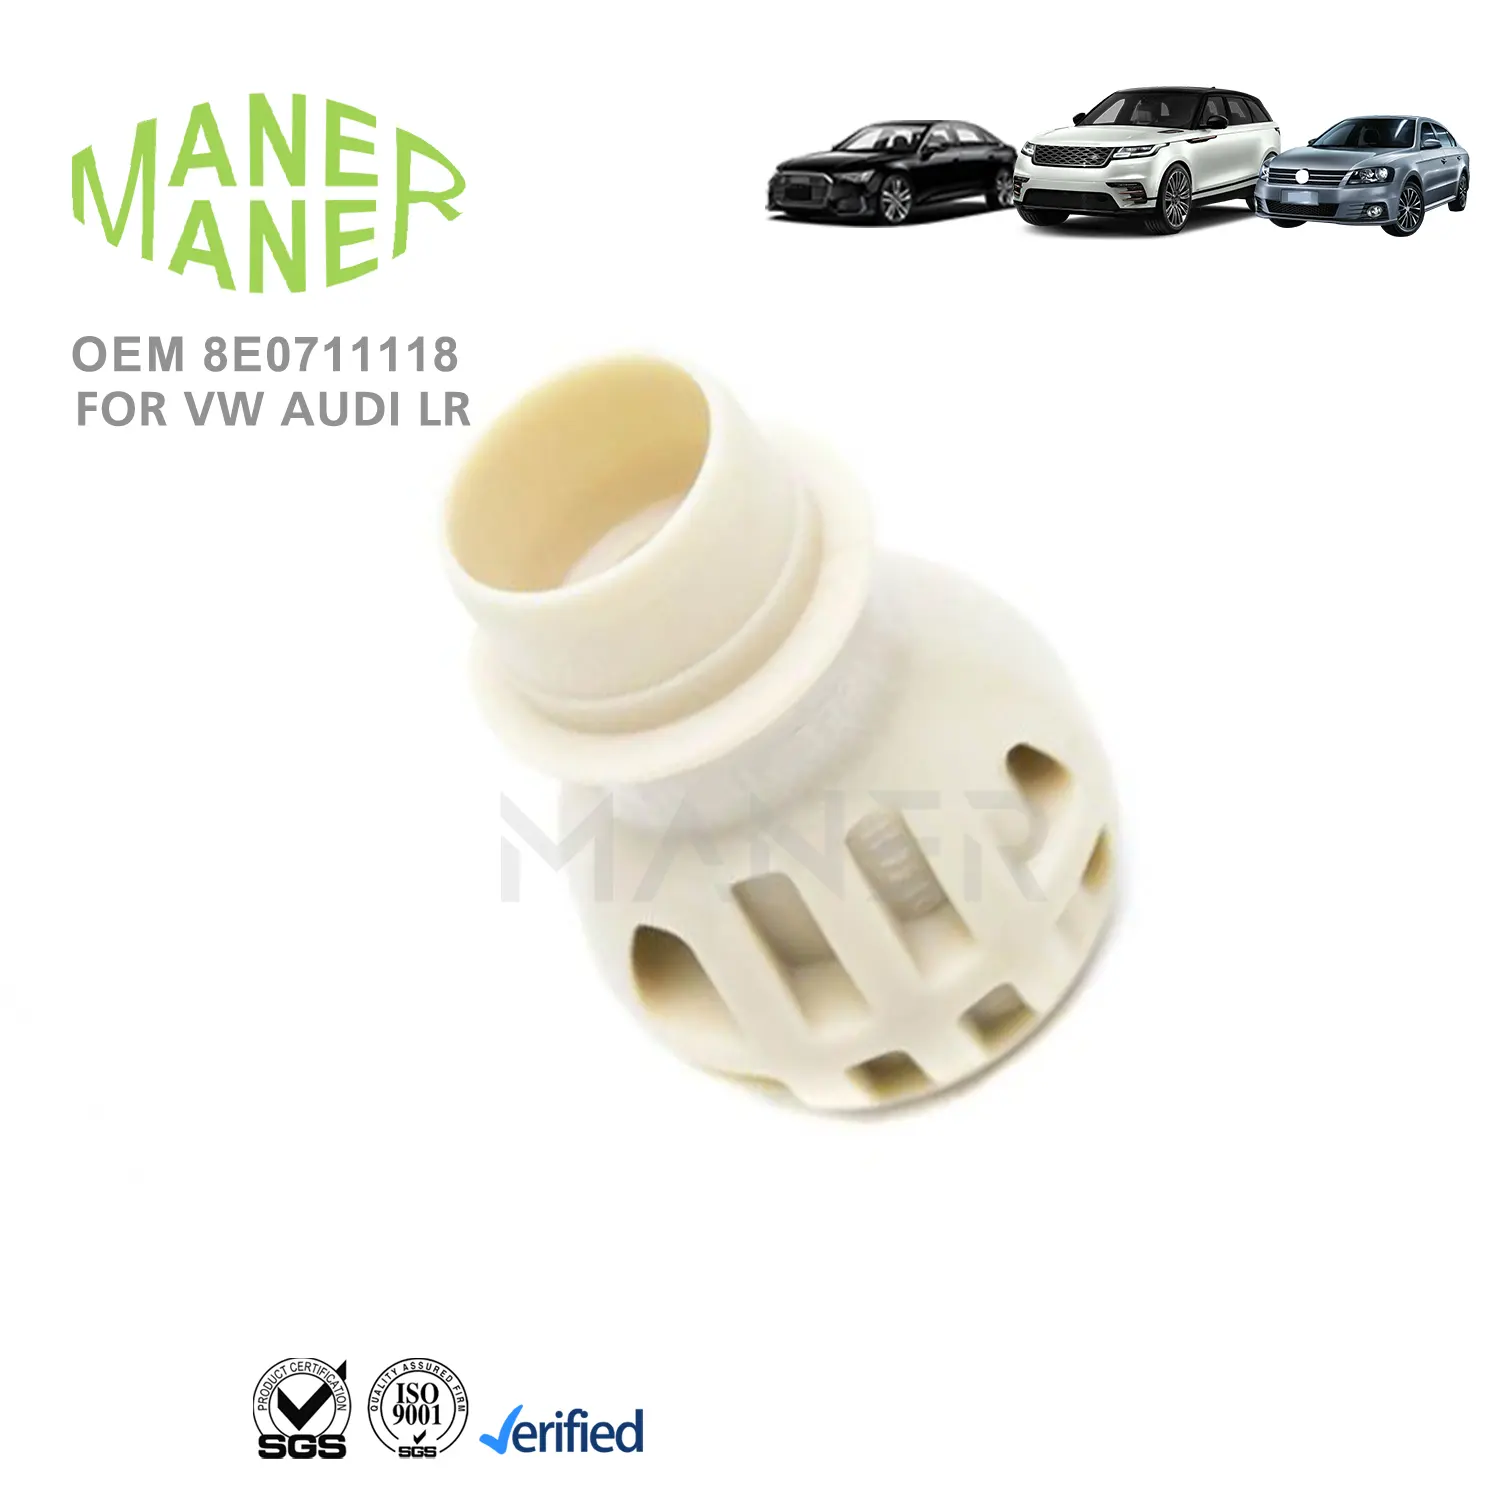 Система автосистемы MANER 8E0711118, безопасный и стабильный карданный вал, корпус подшипника для VW skoda passat Audi A6